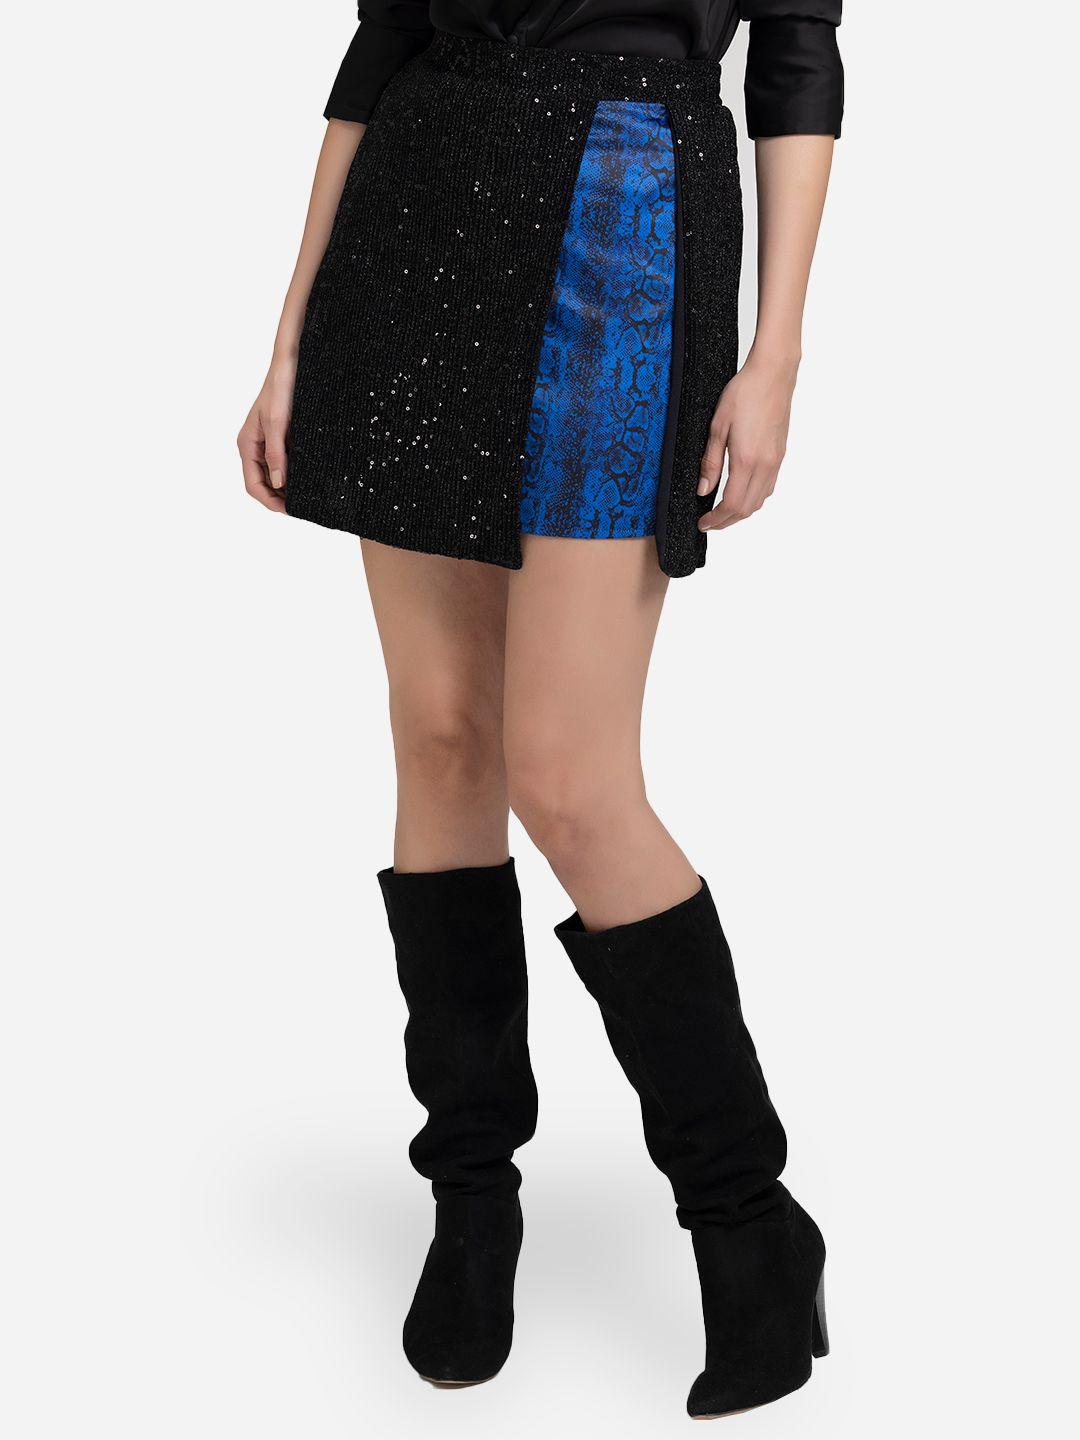 shaye women black & blue snake skin print embellished mini skirt